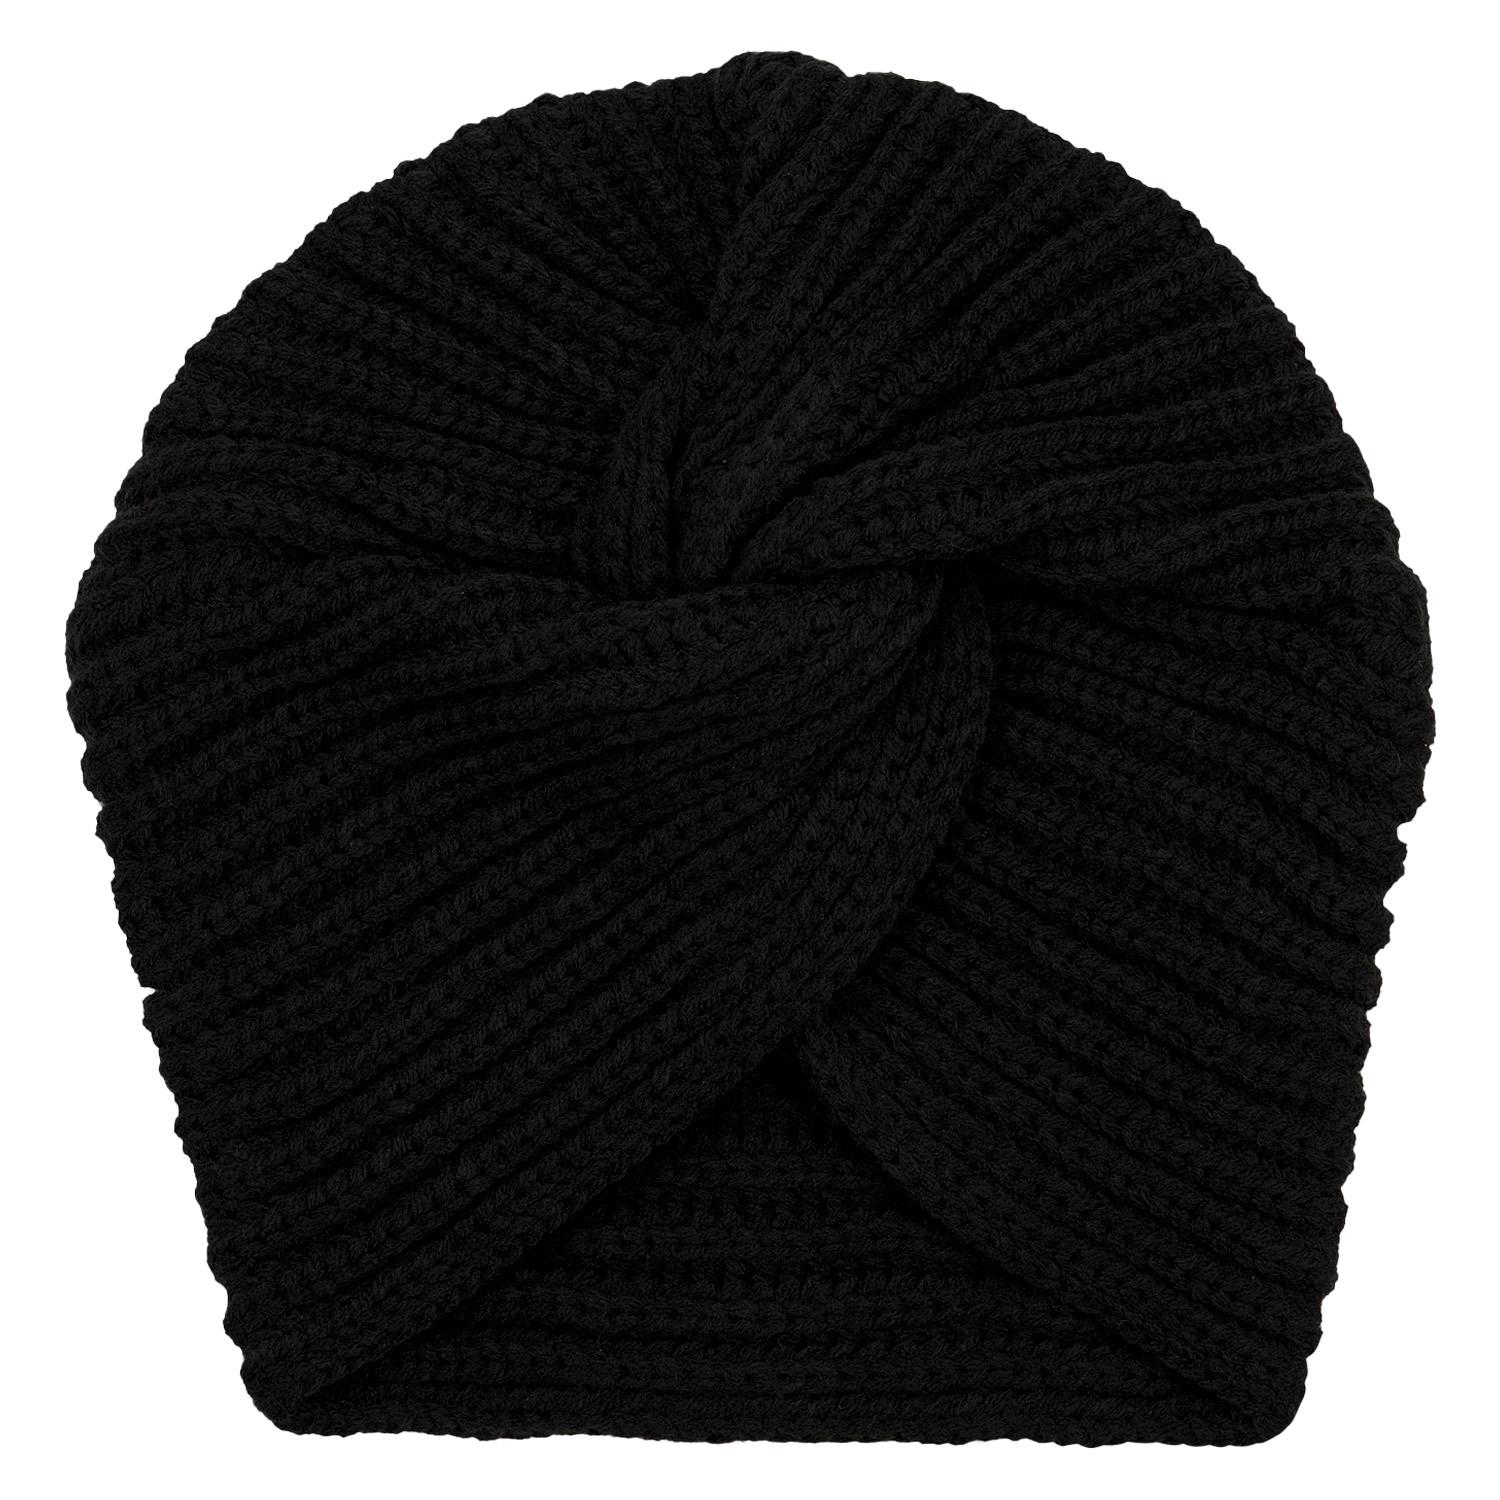 TRISA Hair - Knitted Turban Beanie, black